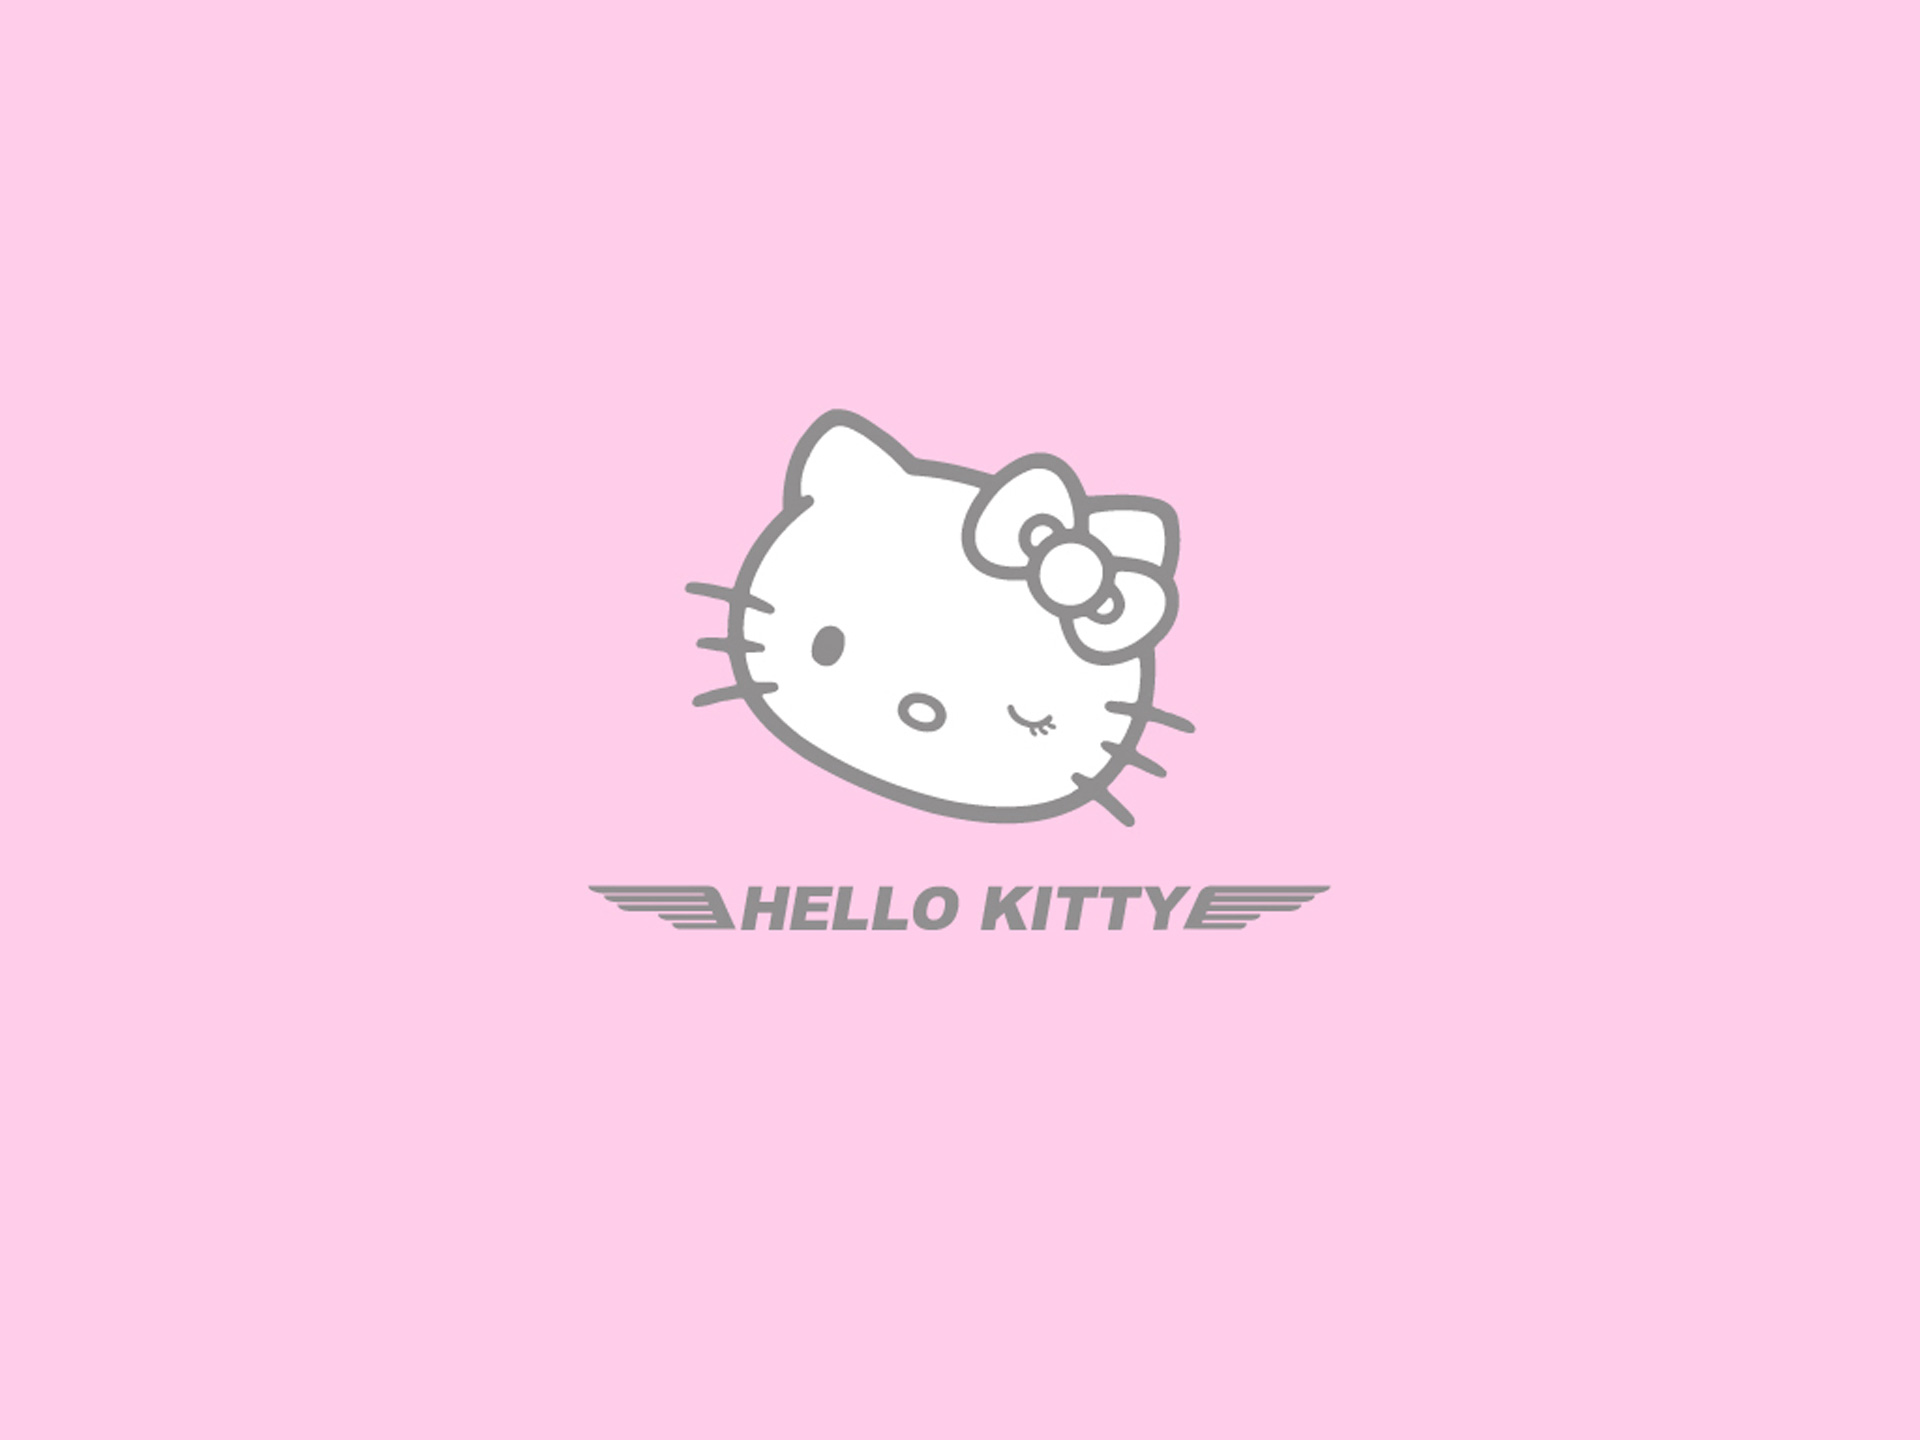 Bộ sưu tập hình nền hello kitty đáng yêu với hơn 999+ hình nền - Hình nền  hello kitty dễ thương và chất lượng cao ở độ phân giải Full 4K